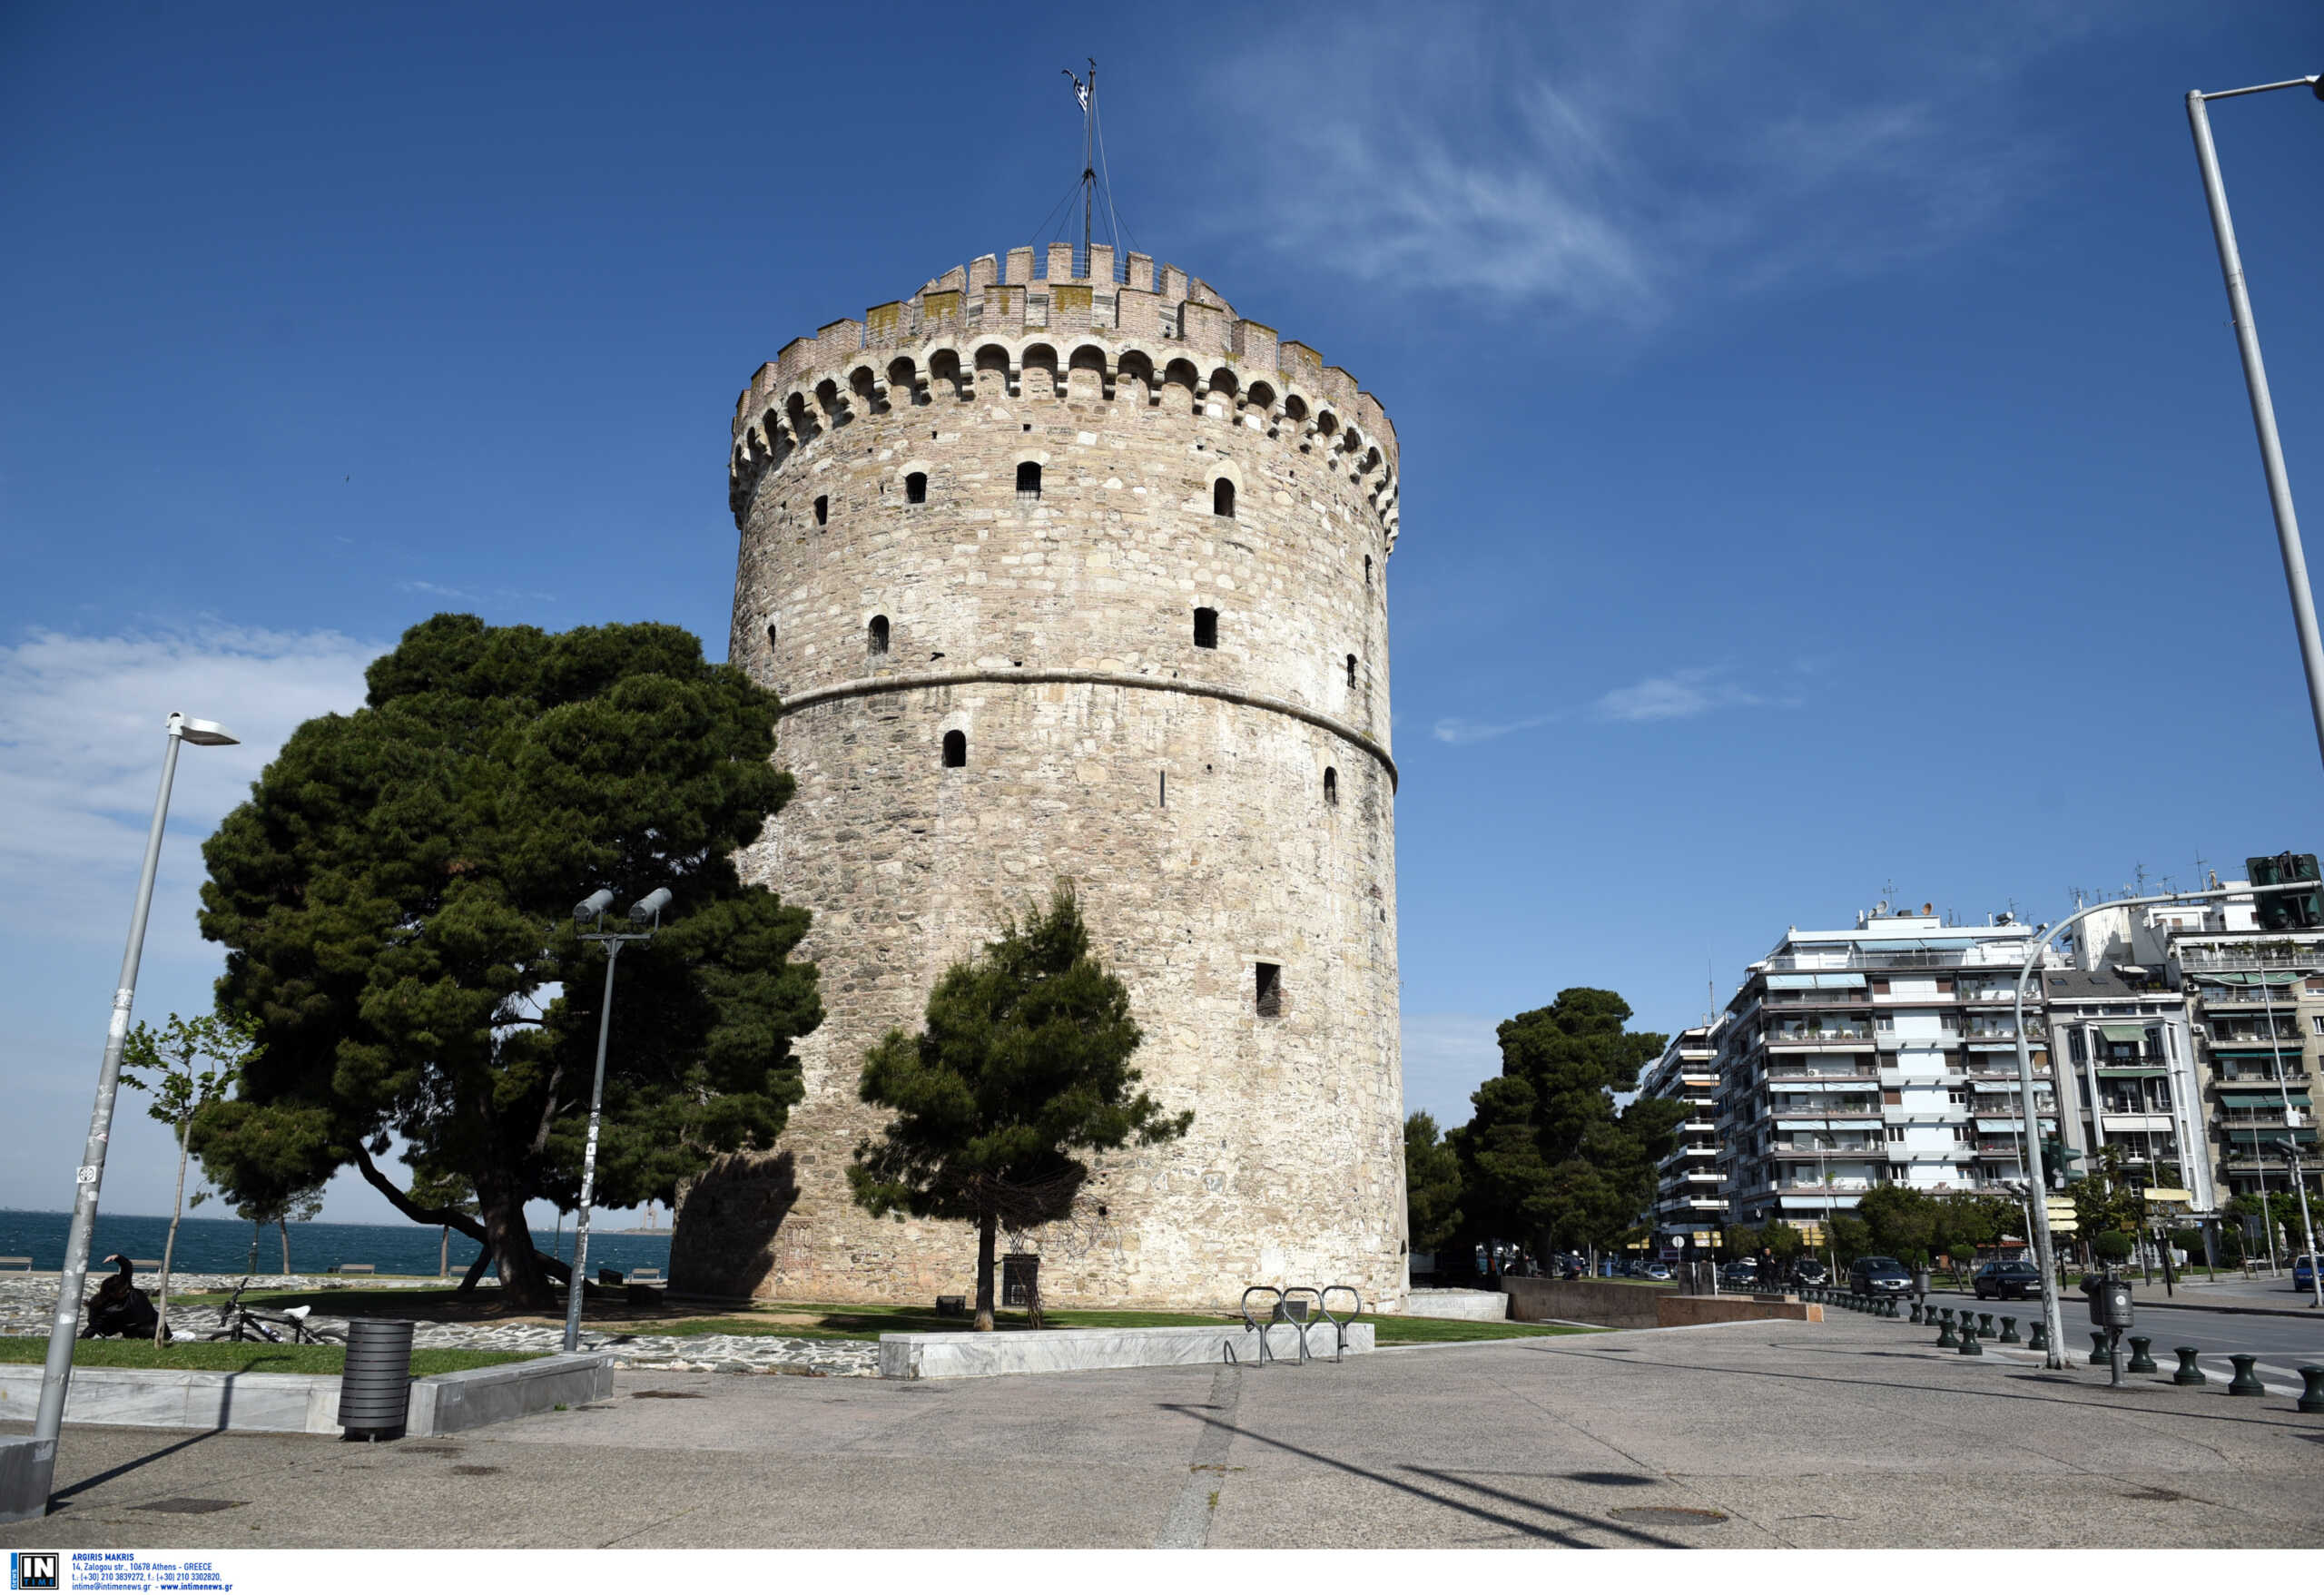 Θεσσαλονίκη: Βίντεο του Οργανισμού Τουρισμού διαφημίζει τη λέξη «μ@λ@κ@ς» ως σήμα κατατεθέν για να προσελκύσει επισκέπτες